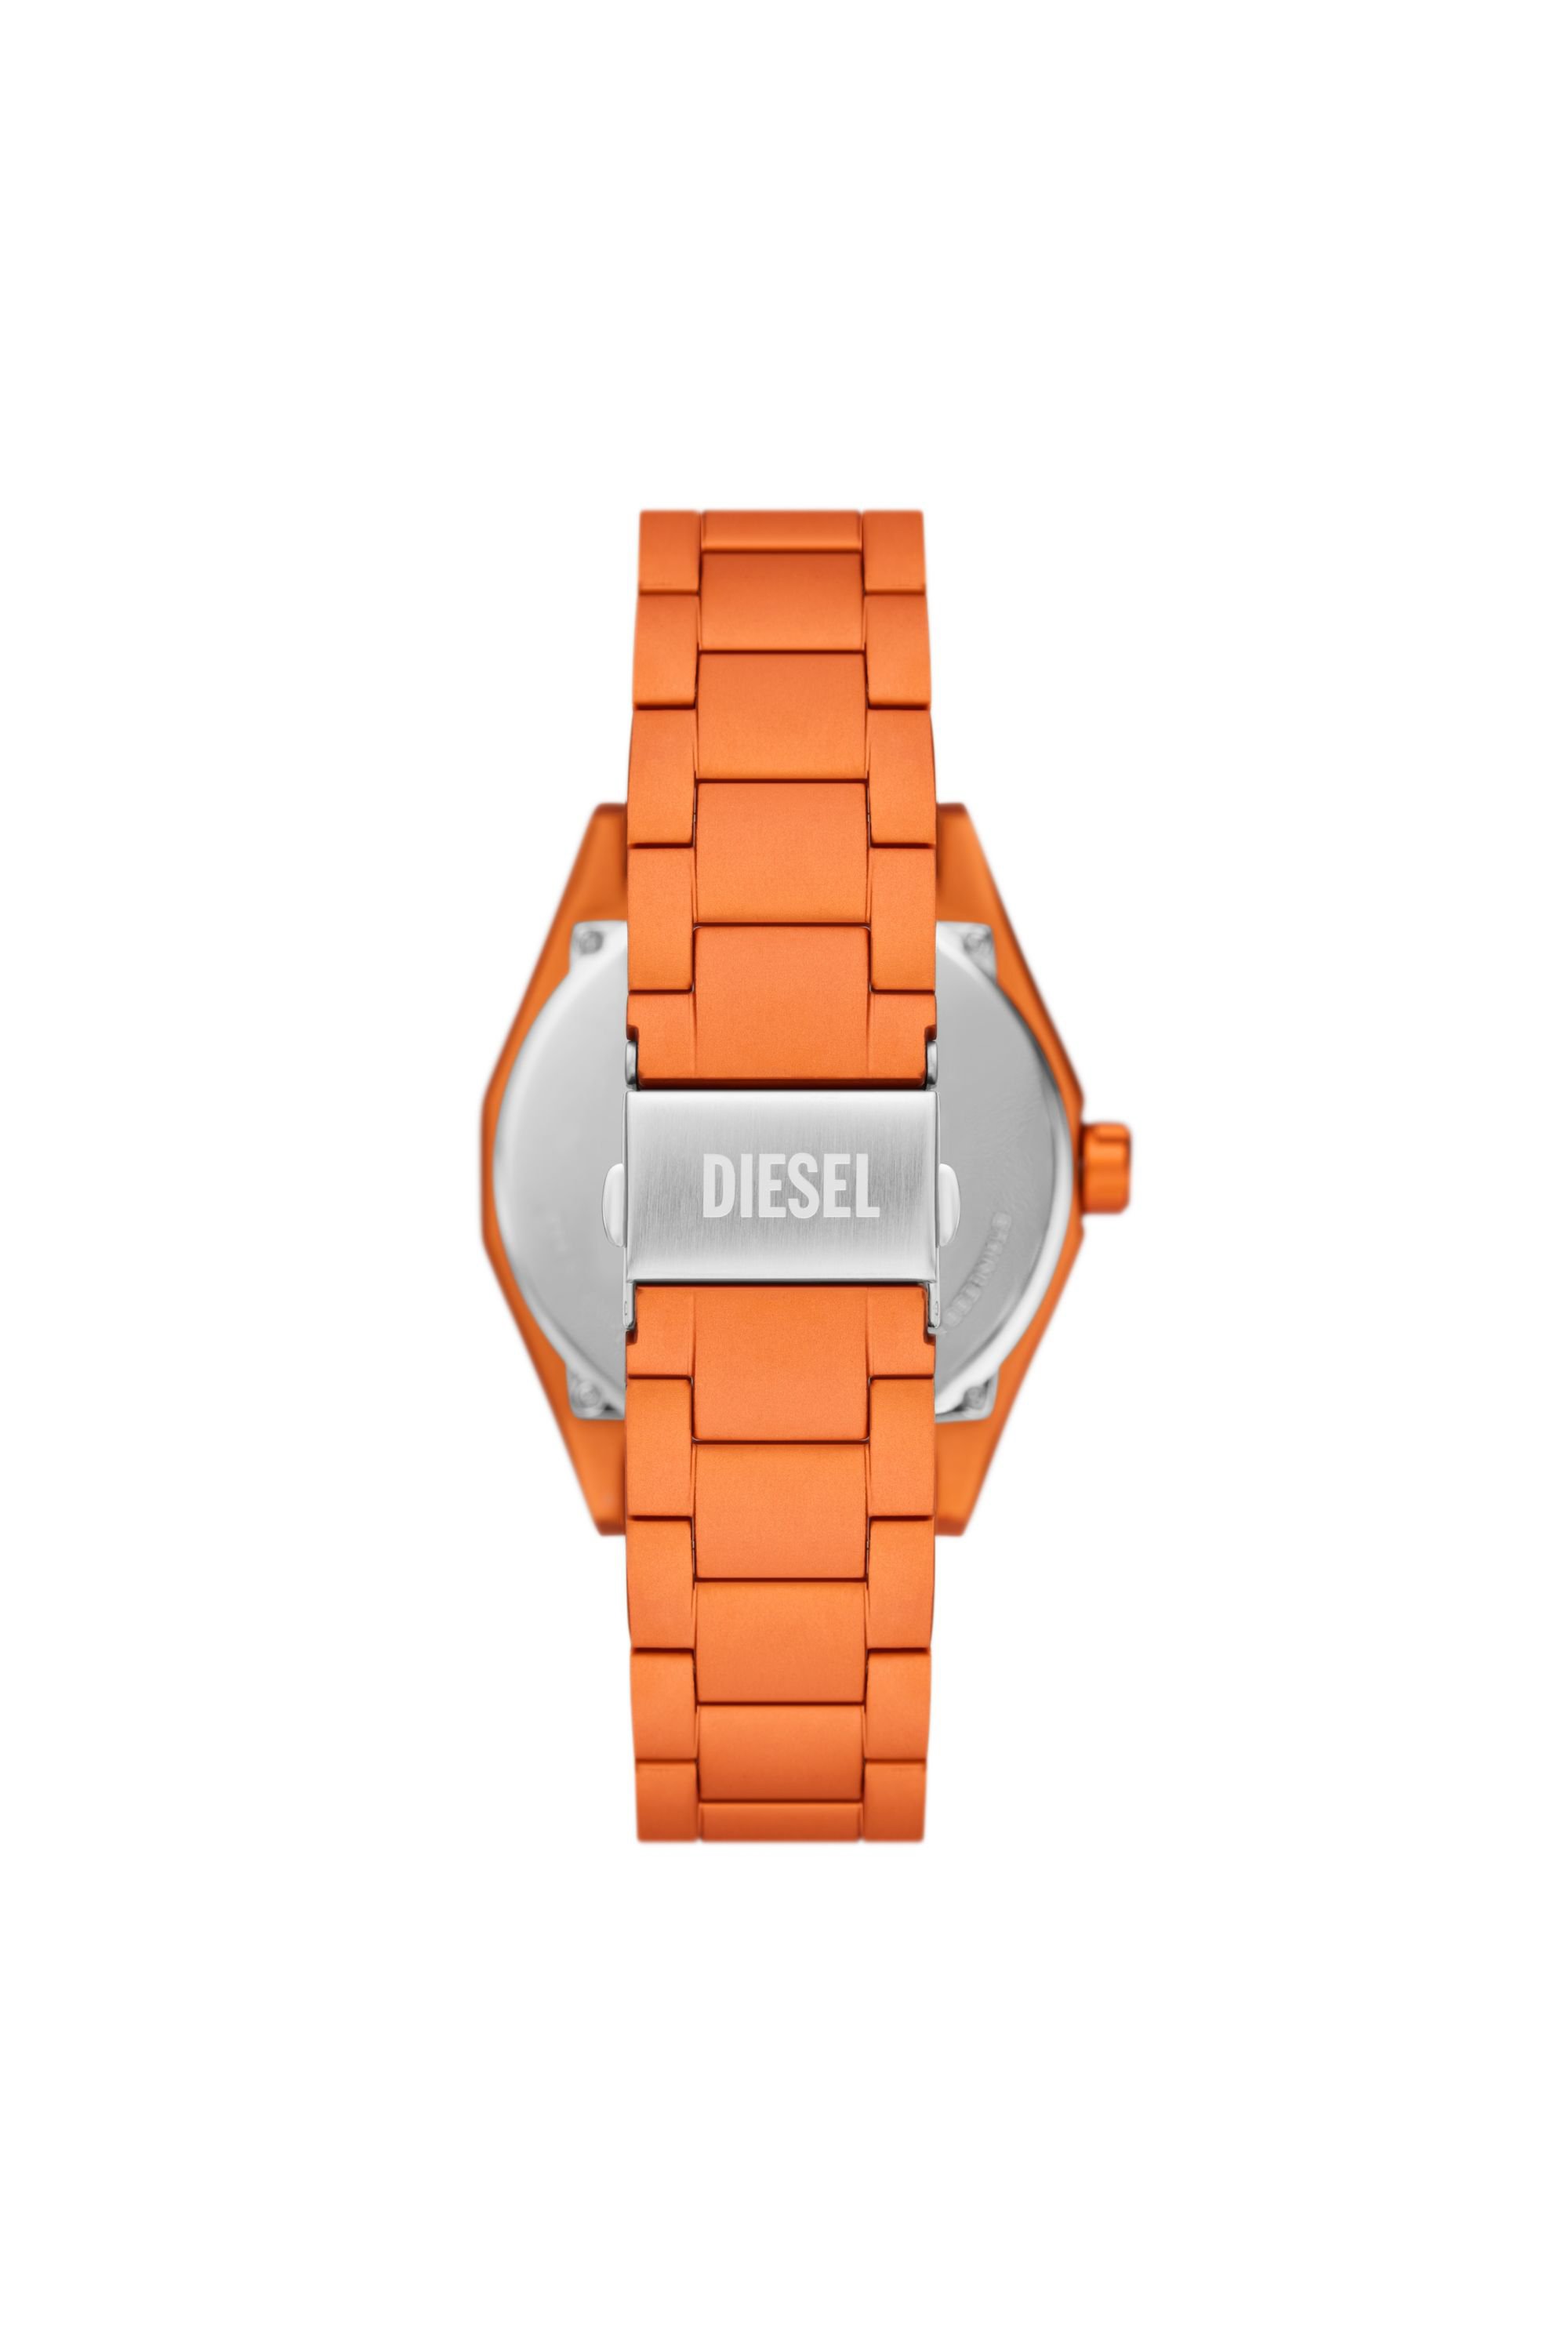 Diesel - DZ2209, Hombre Reloj Scraper de aluminio naranja con movimiento de tres agujas in Naranja - Image 2